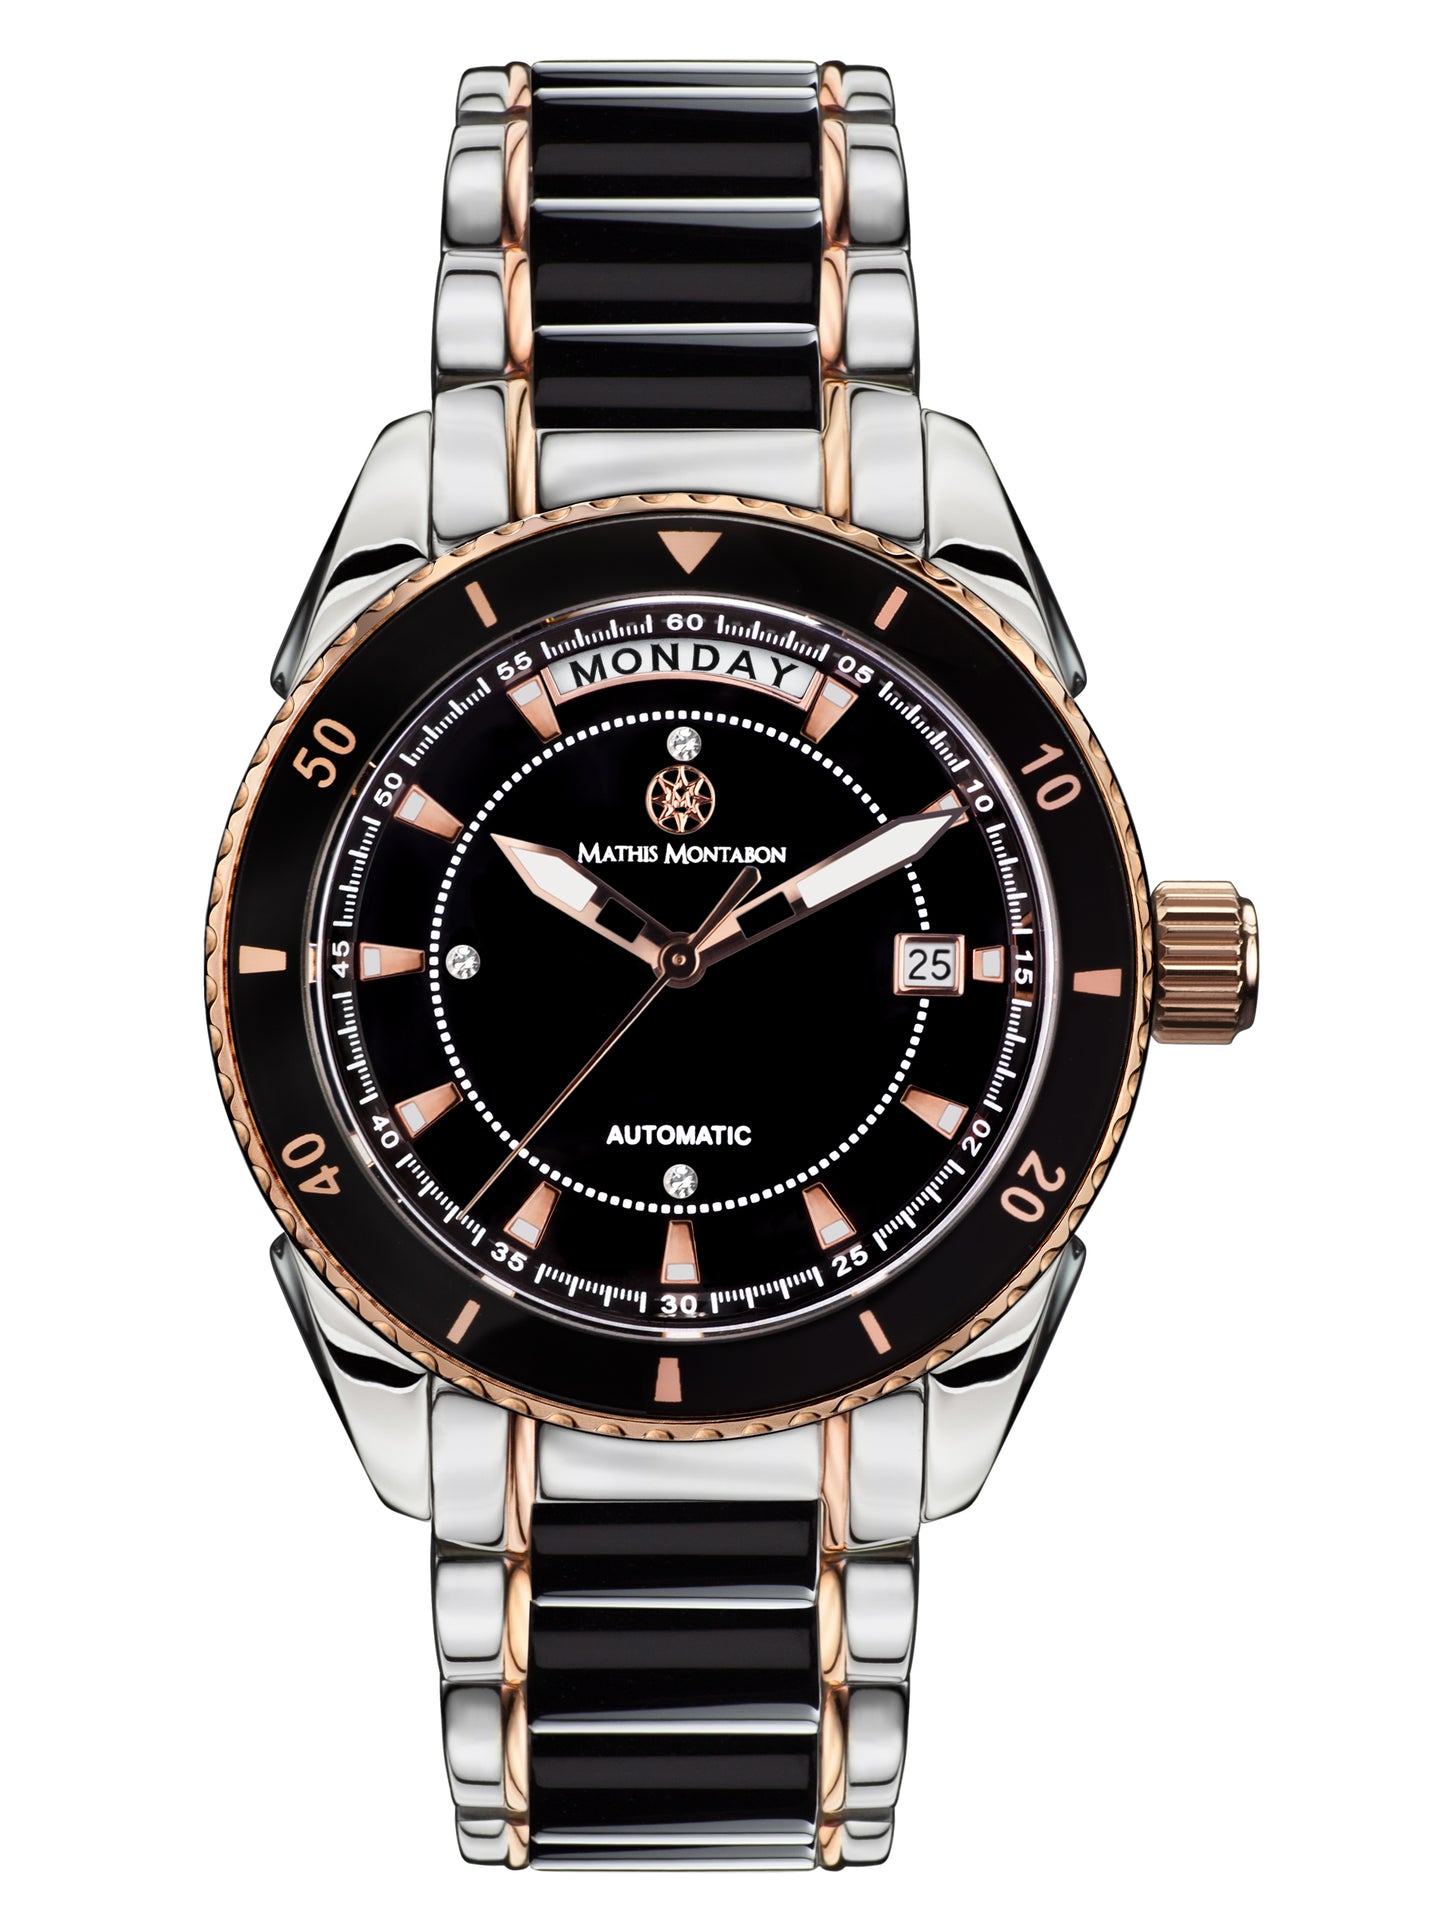 Automatic watches — La Magnifique — Mathis Montabon — rosegold schwarz II